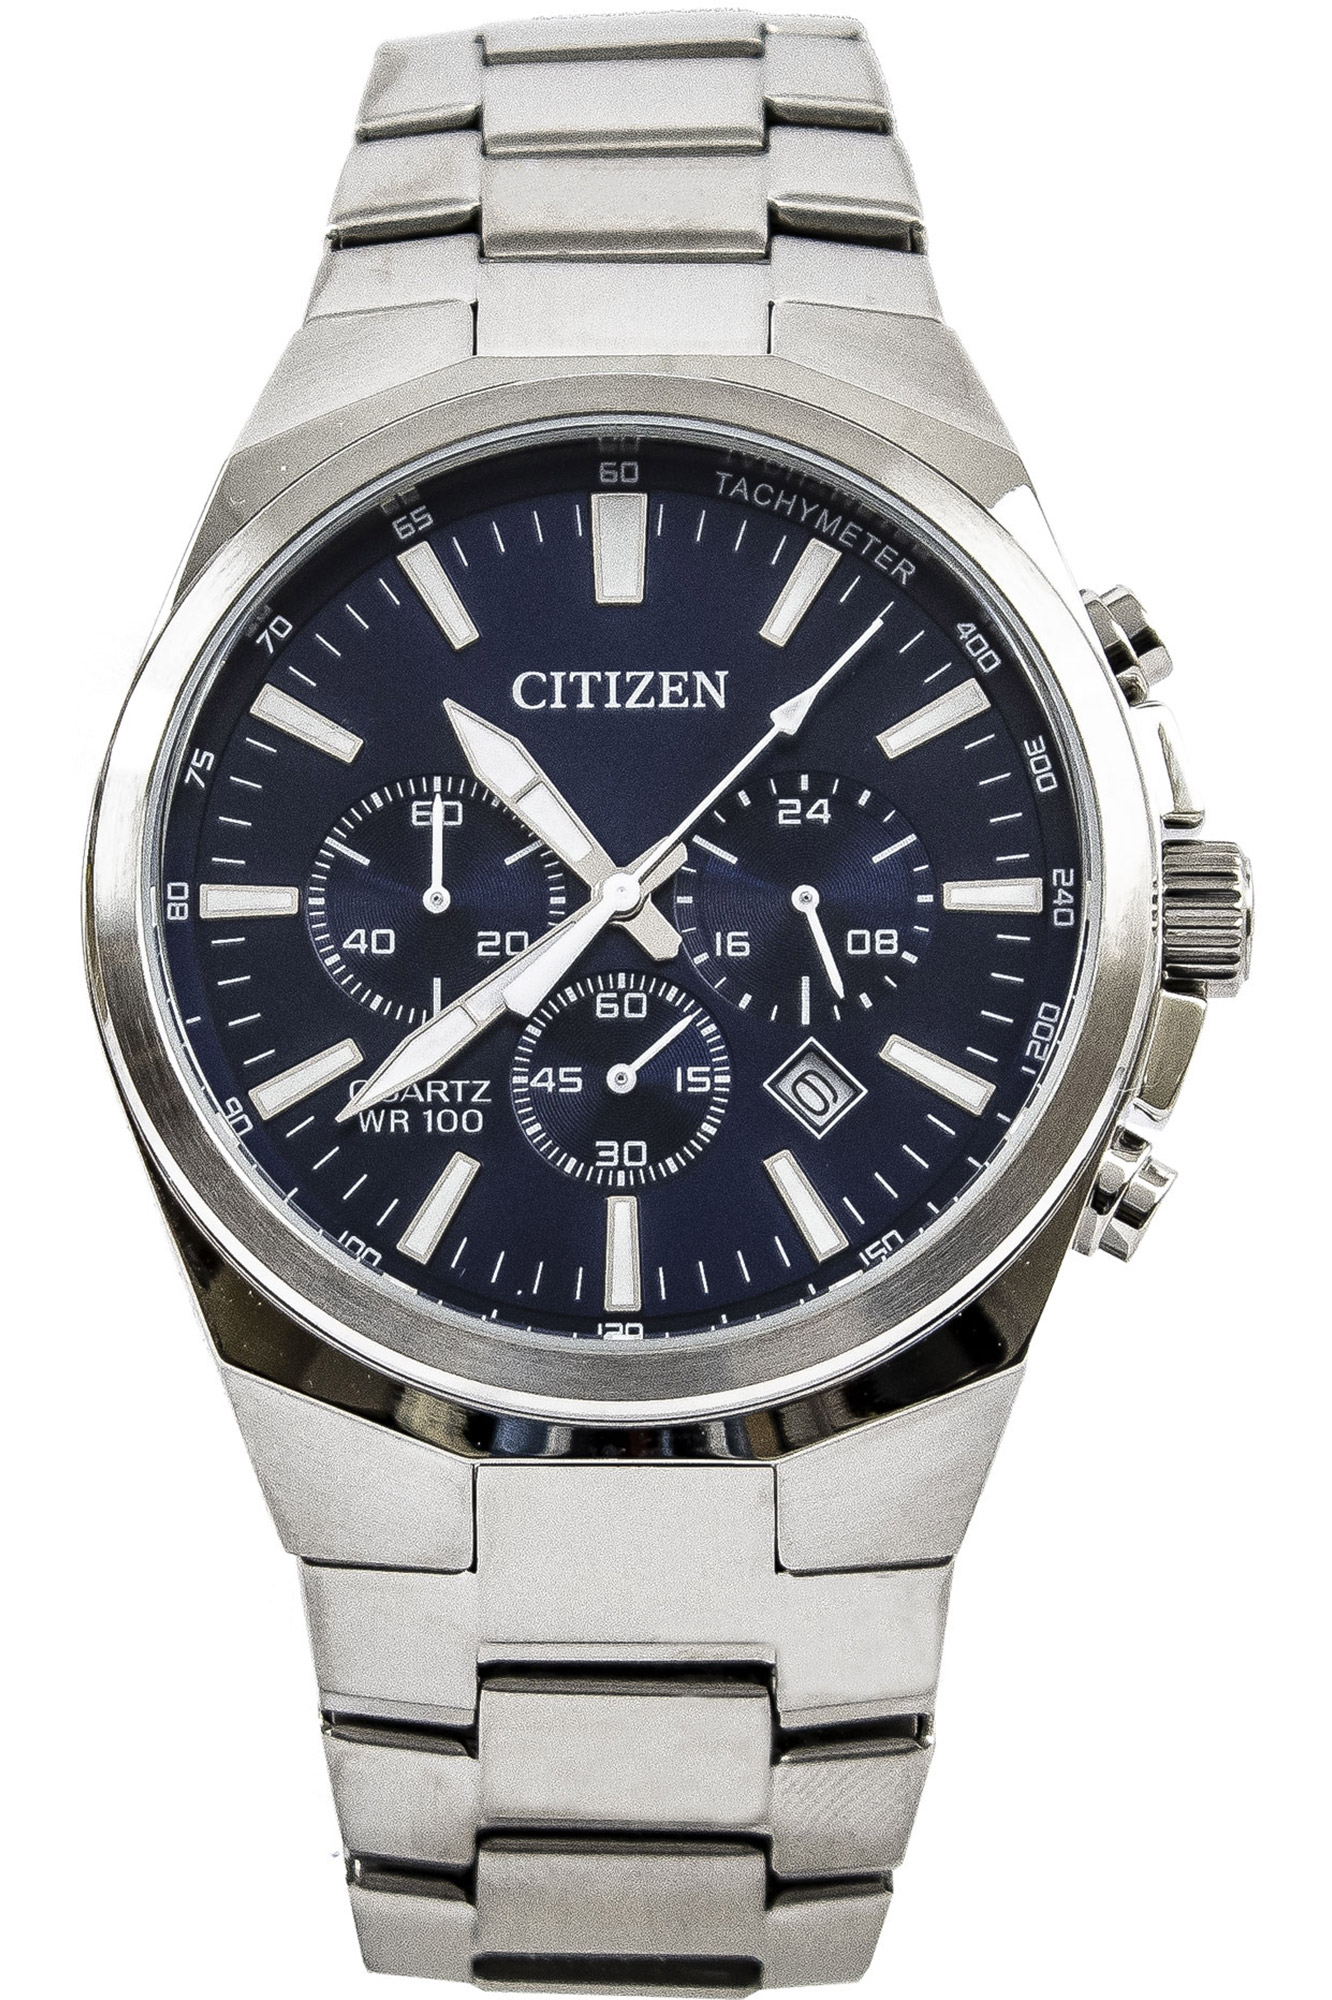 Watch Citizen an8170-59l